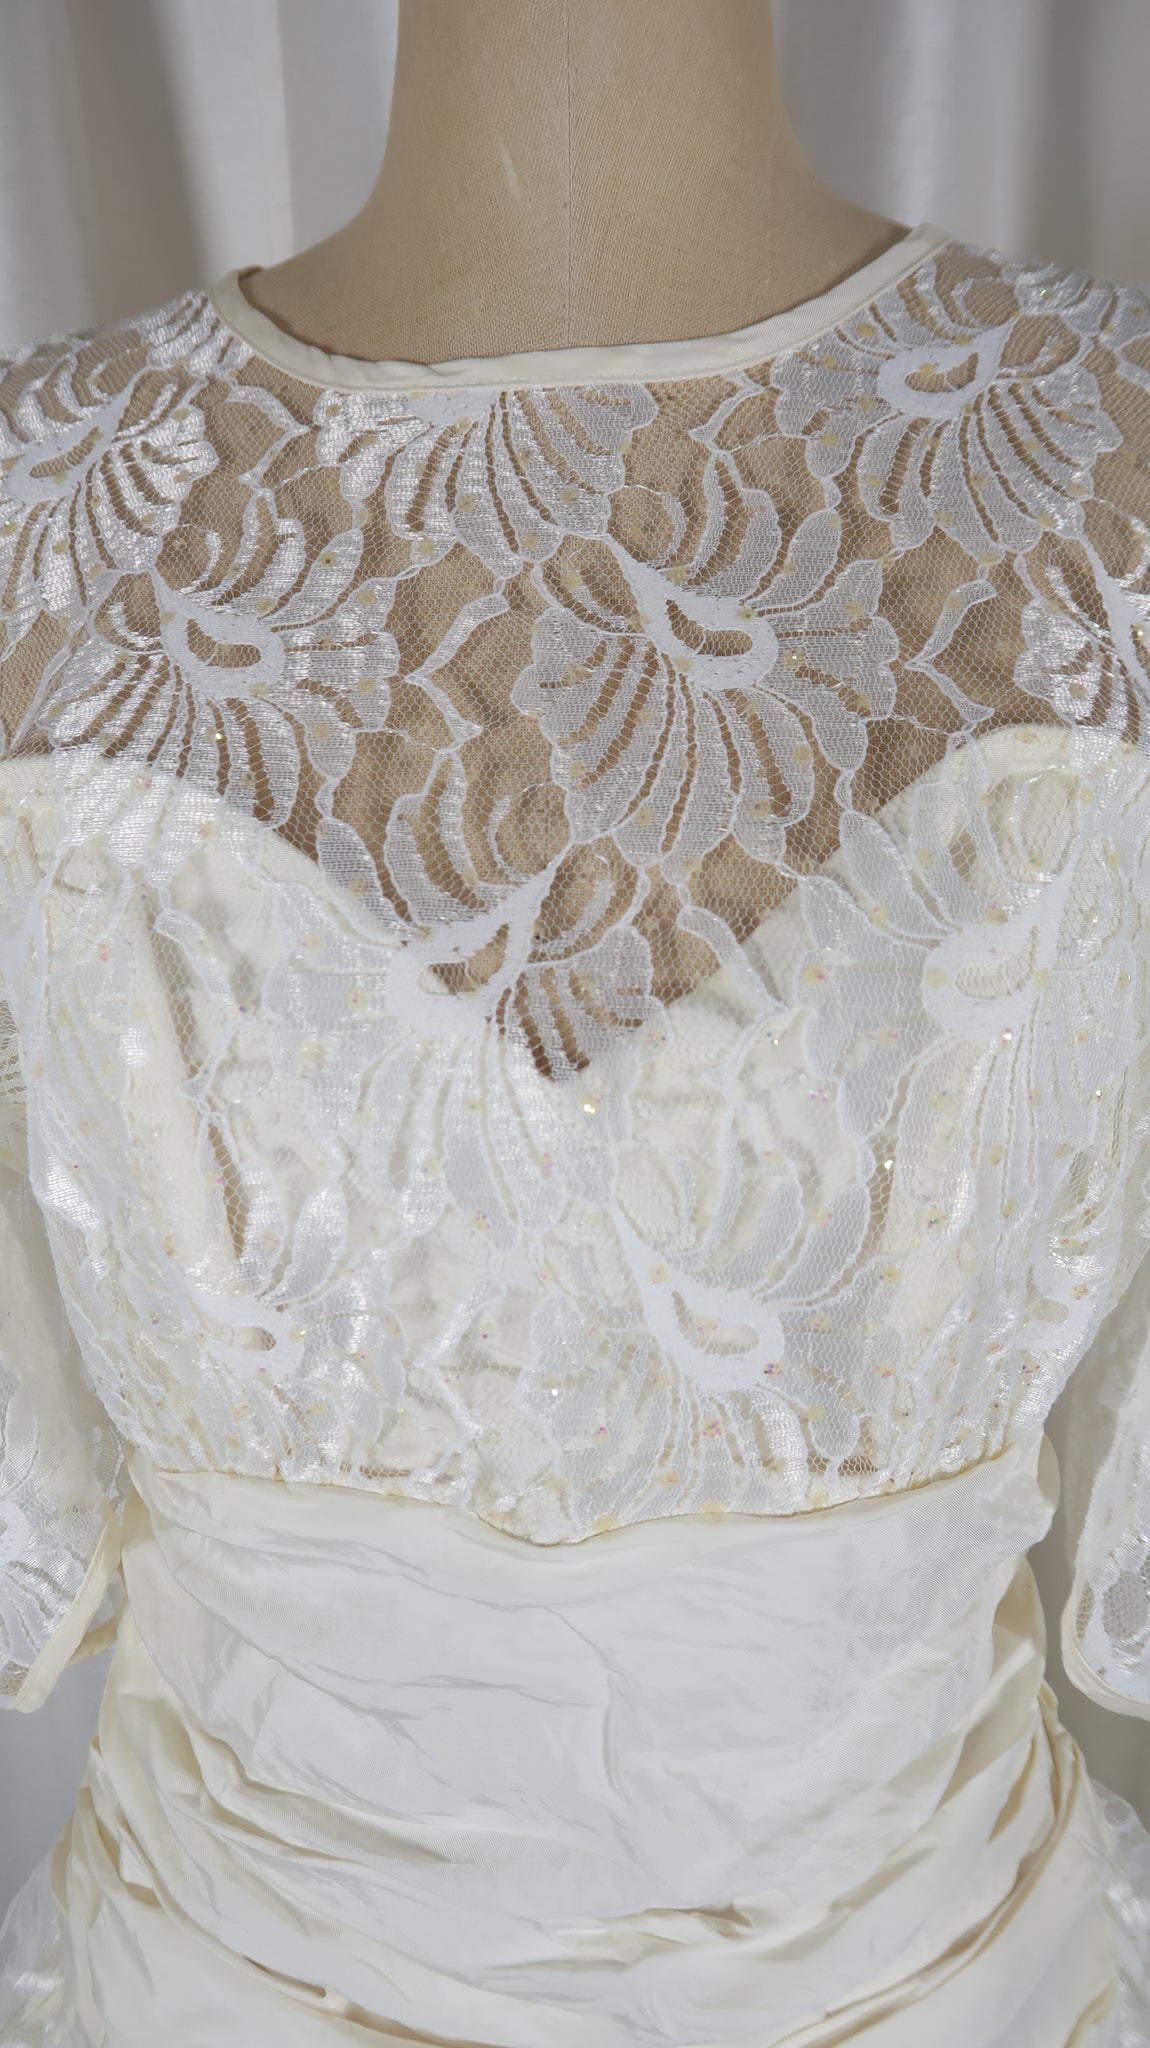 Glenrob Ivory White Dress